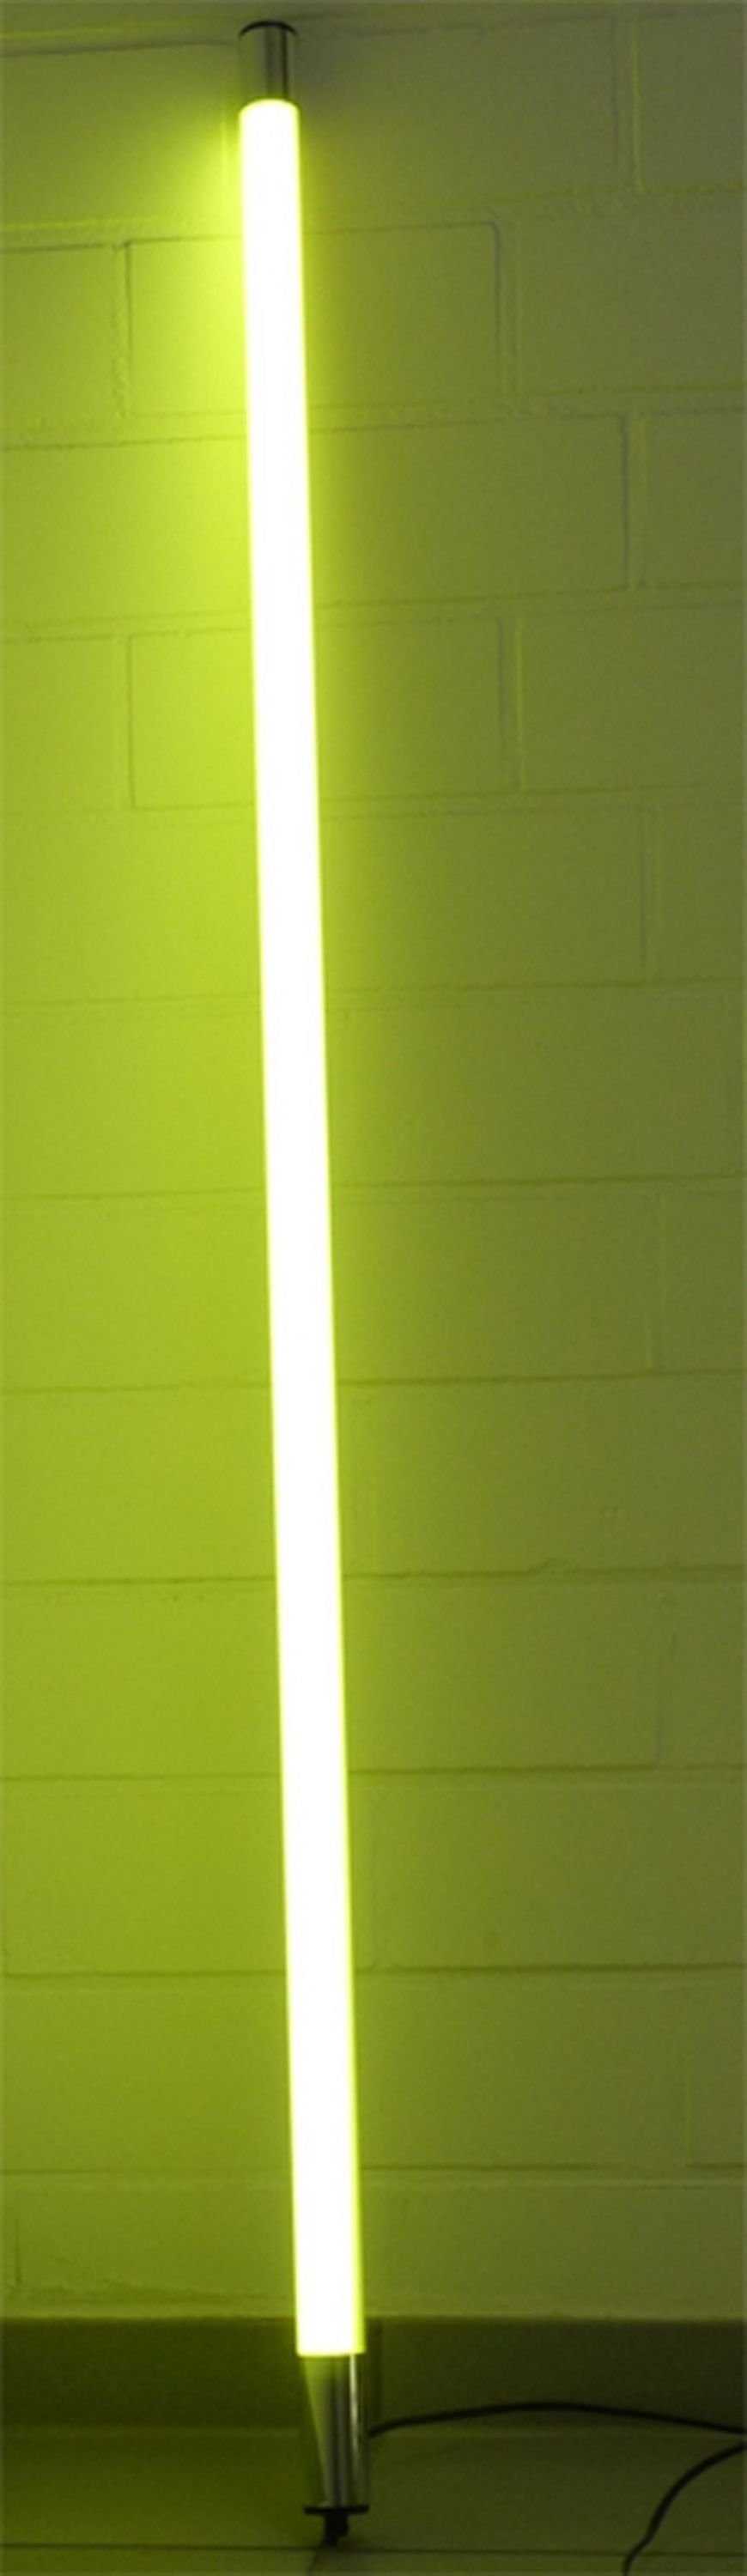 Länge 1700 Röhre für LED T8, Gelb Außen XENON Gelb, Xenon 1,23m LED Lumen Leuchtstab Wandleuchte LED IP44 Satiniert